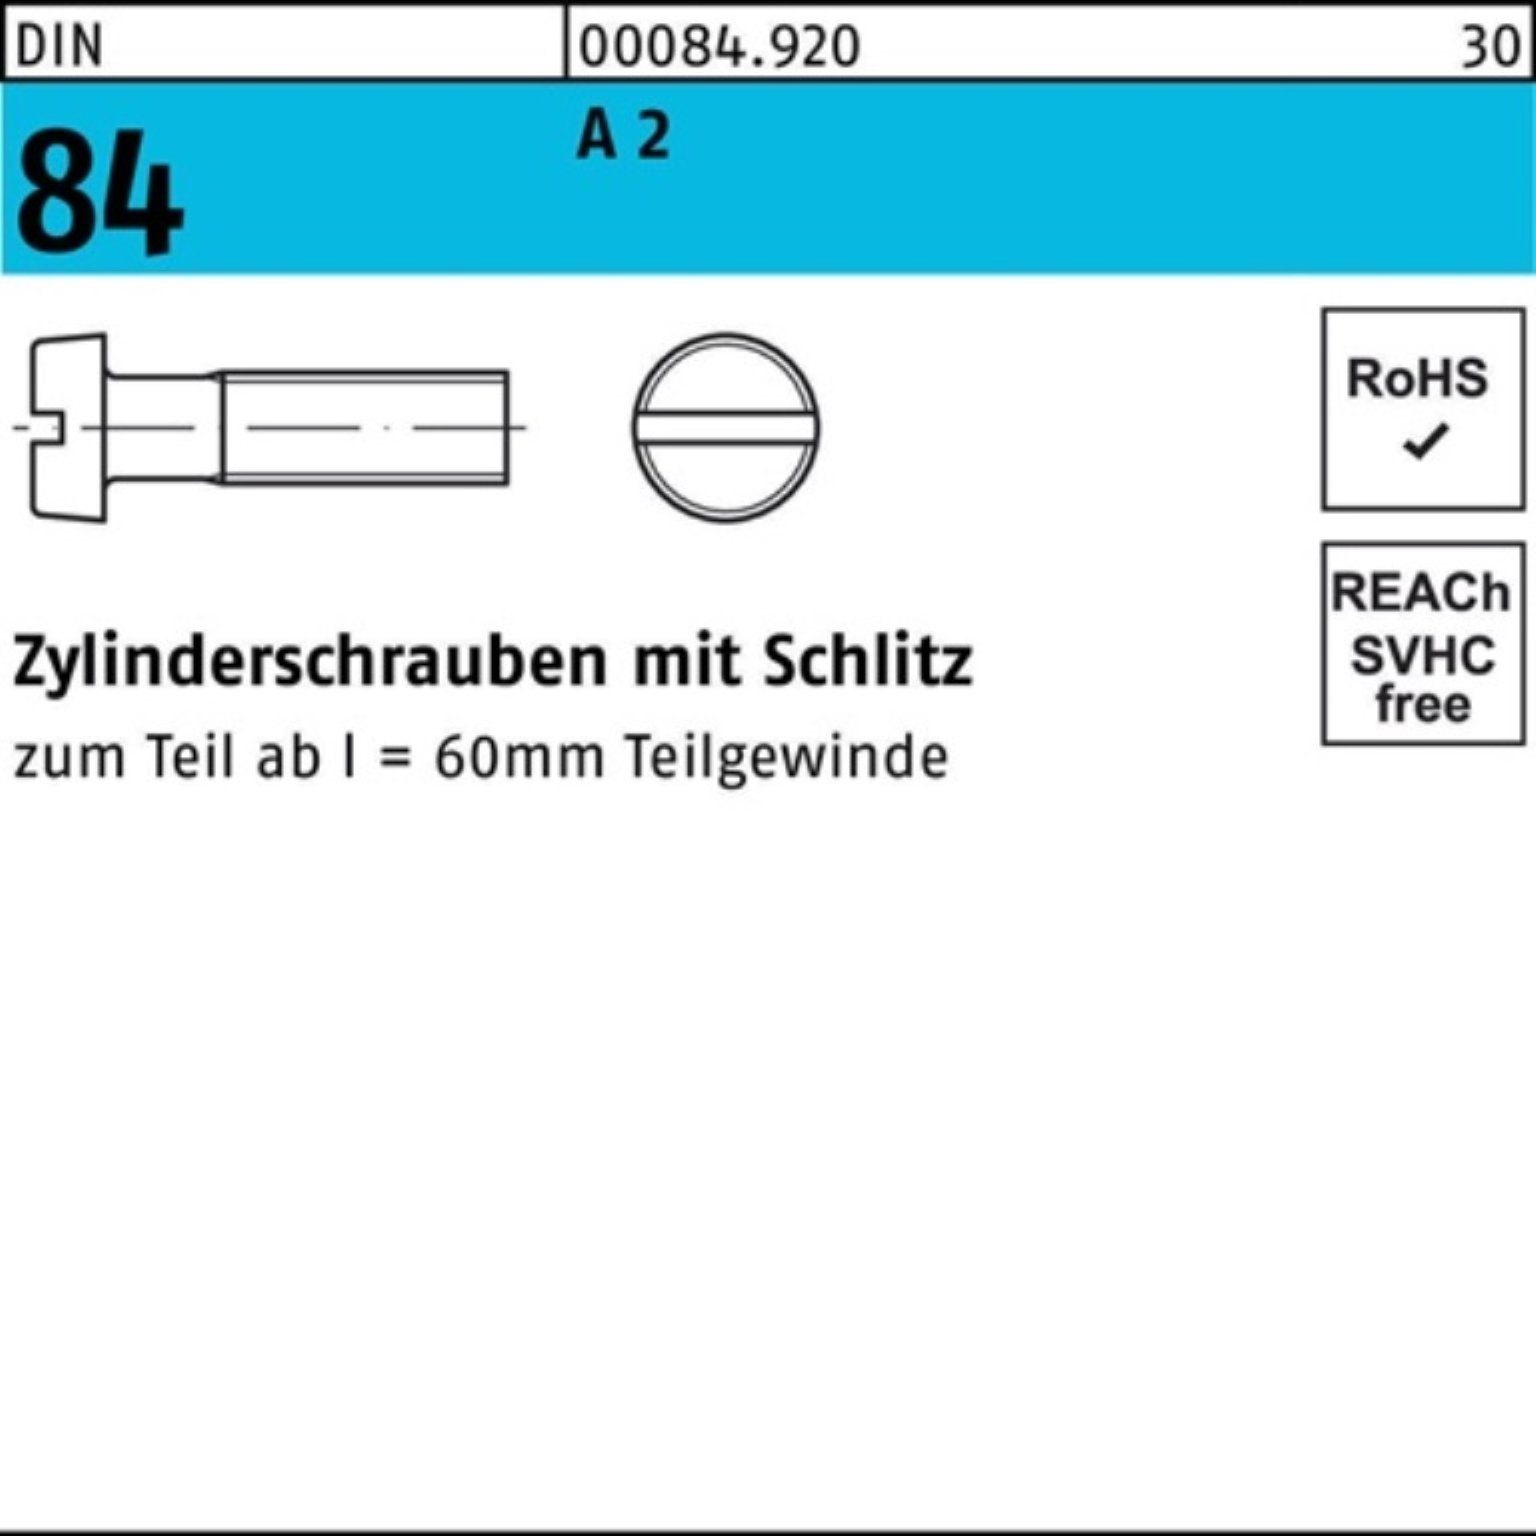 A St 200 DIN M6x 2 Pack 200er 84/ISO Reyher Zylinderschraube Zylinderschraube 1207 20 Schlitz